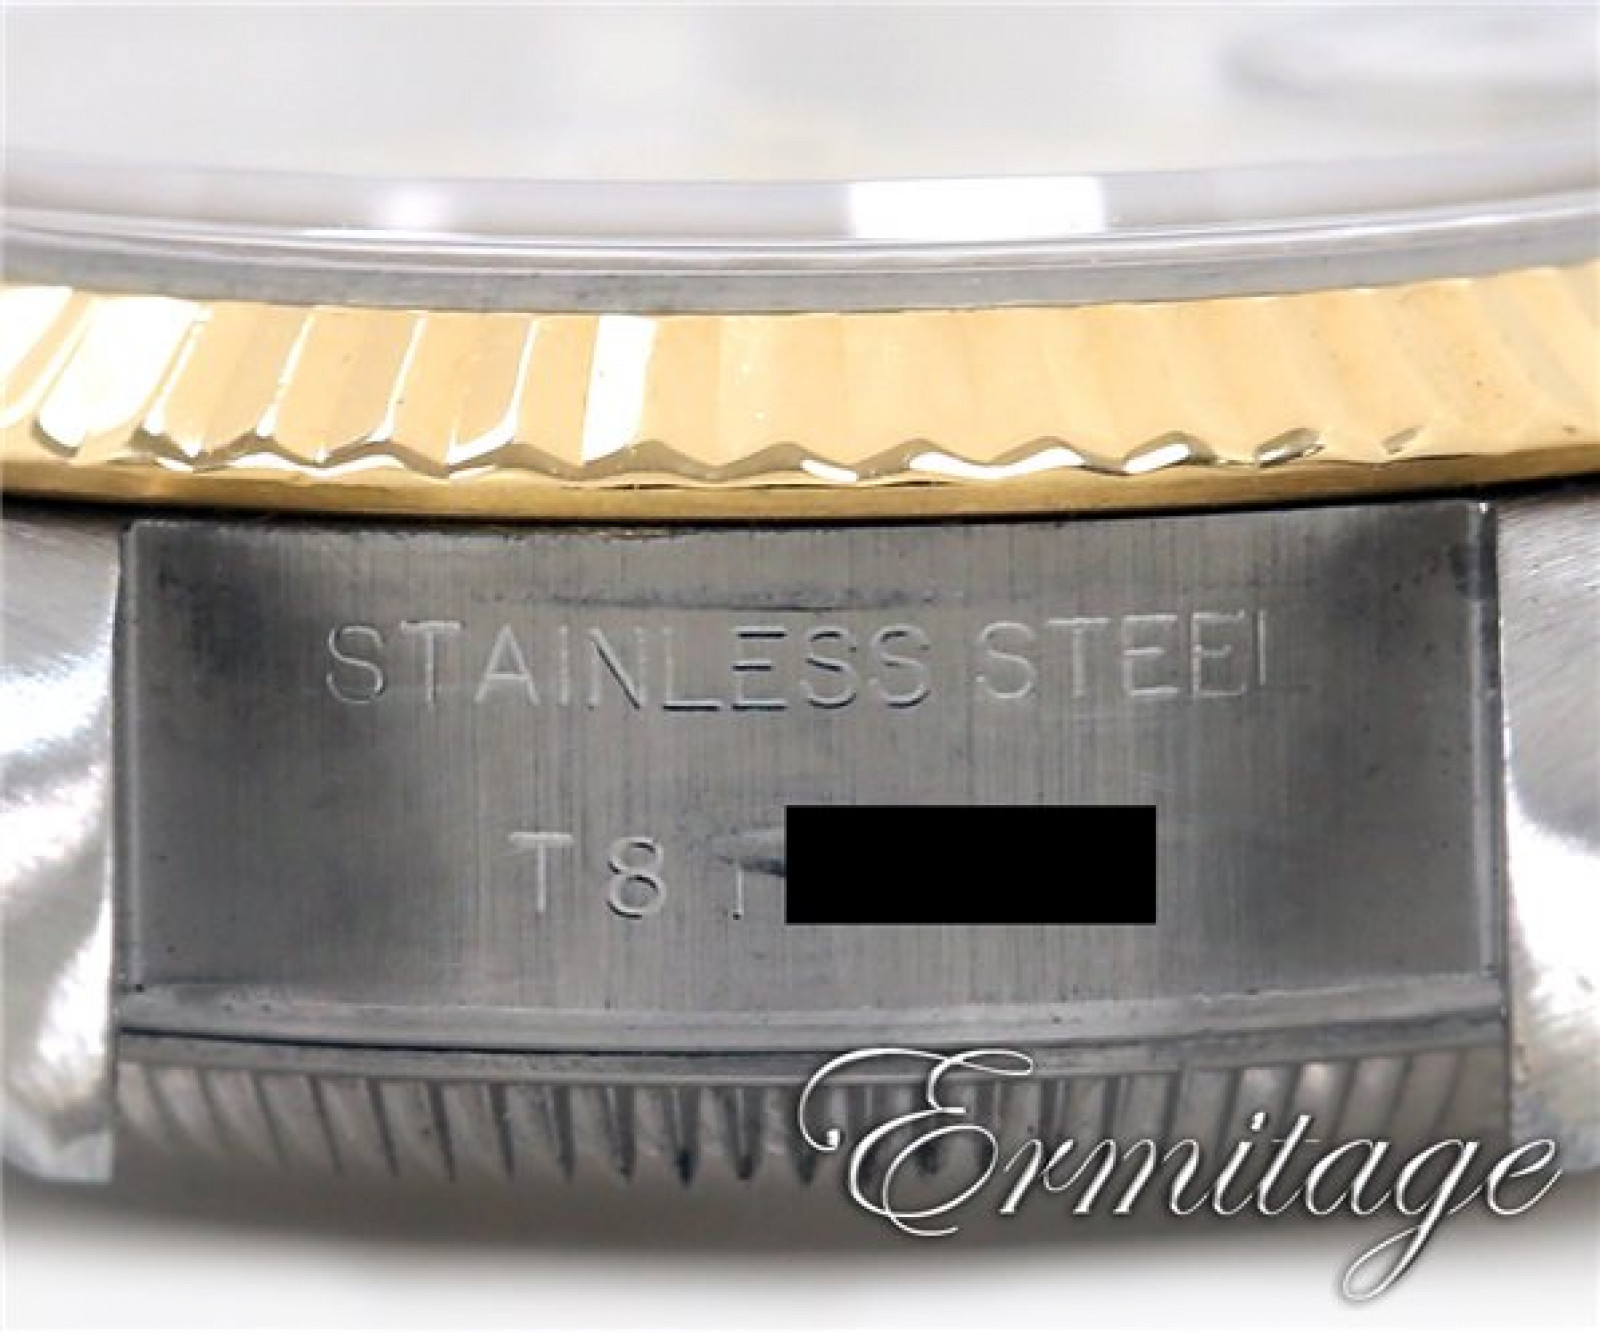 Rolex Datejust 69173 Gold & Steel White